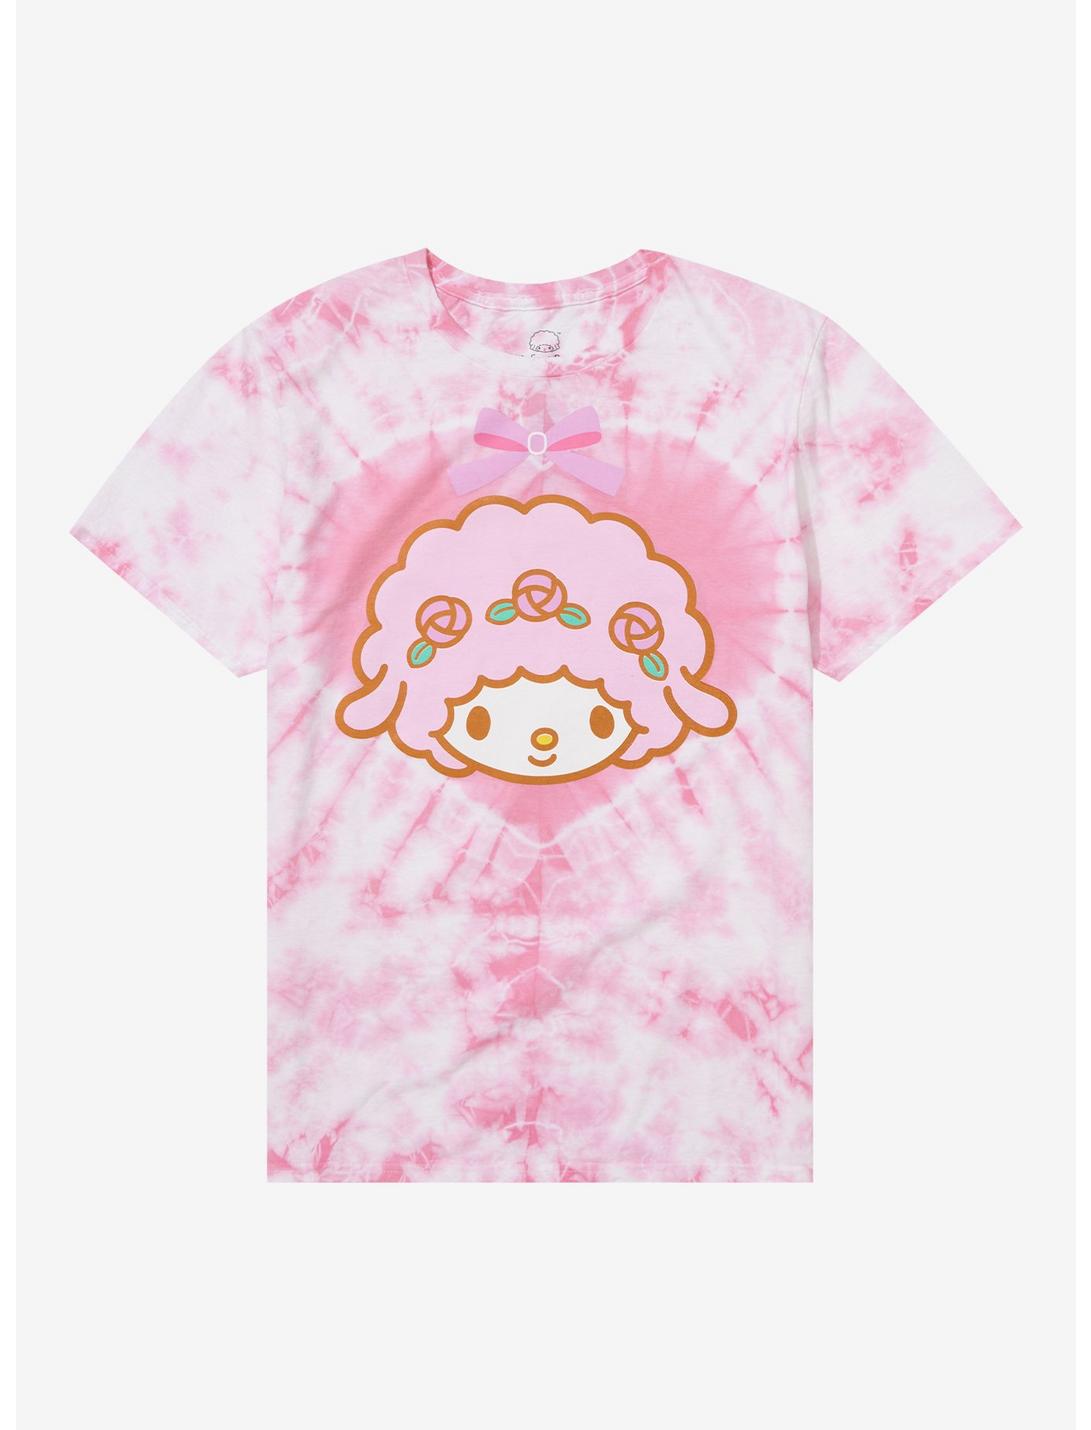 My Sweet Piano Pink Heart Tie-Dye Boyfriend Fit Girls T-Shirt, MULTI, hi-res